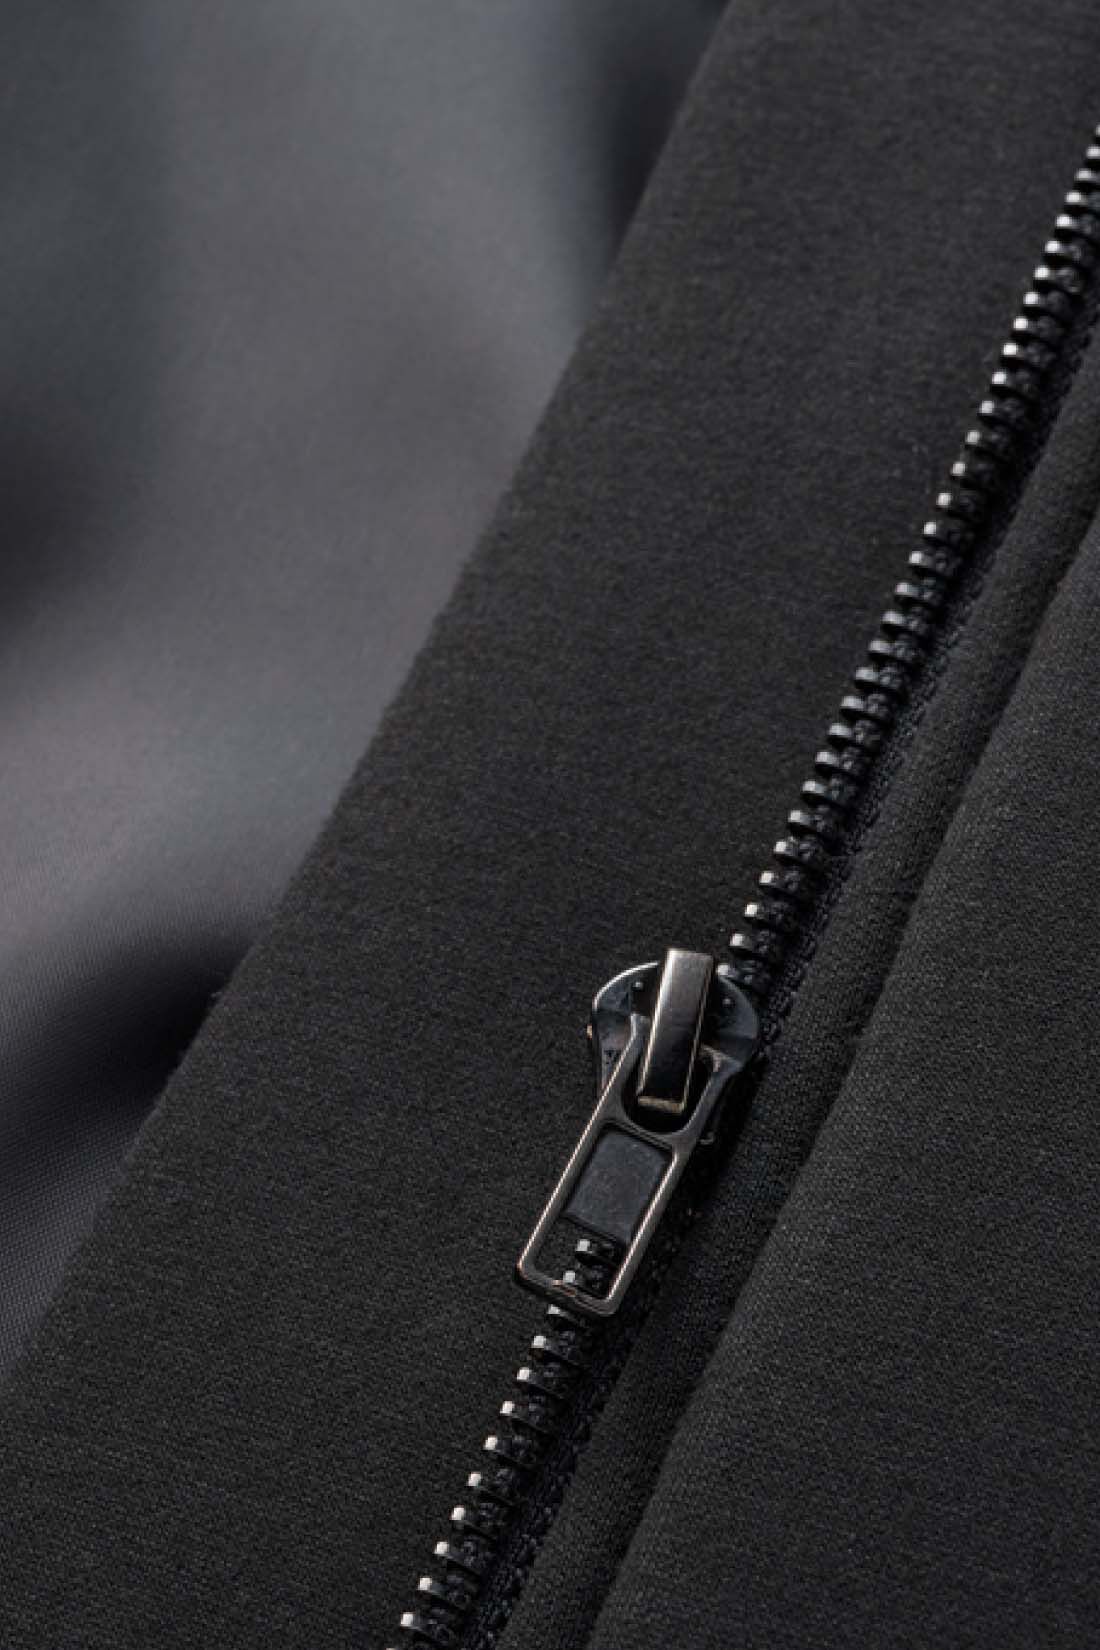 DRECO by IEDIT|IEDIT[イディット]　シルエット変化を楽しむ ダンボール素材×キルティングの切り替えデザインコート〈ブラック〉|きちんと裏地付きのコート仕立てなので、袖のすべりもよく暖か。